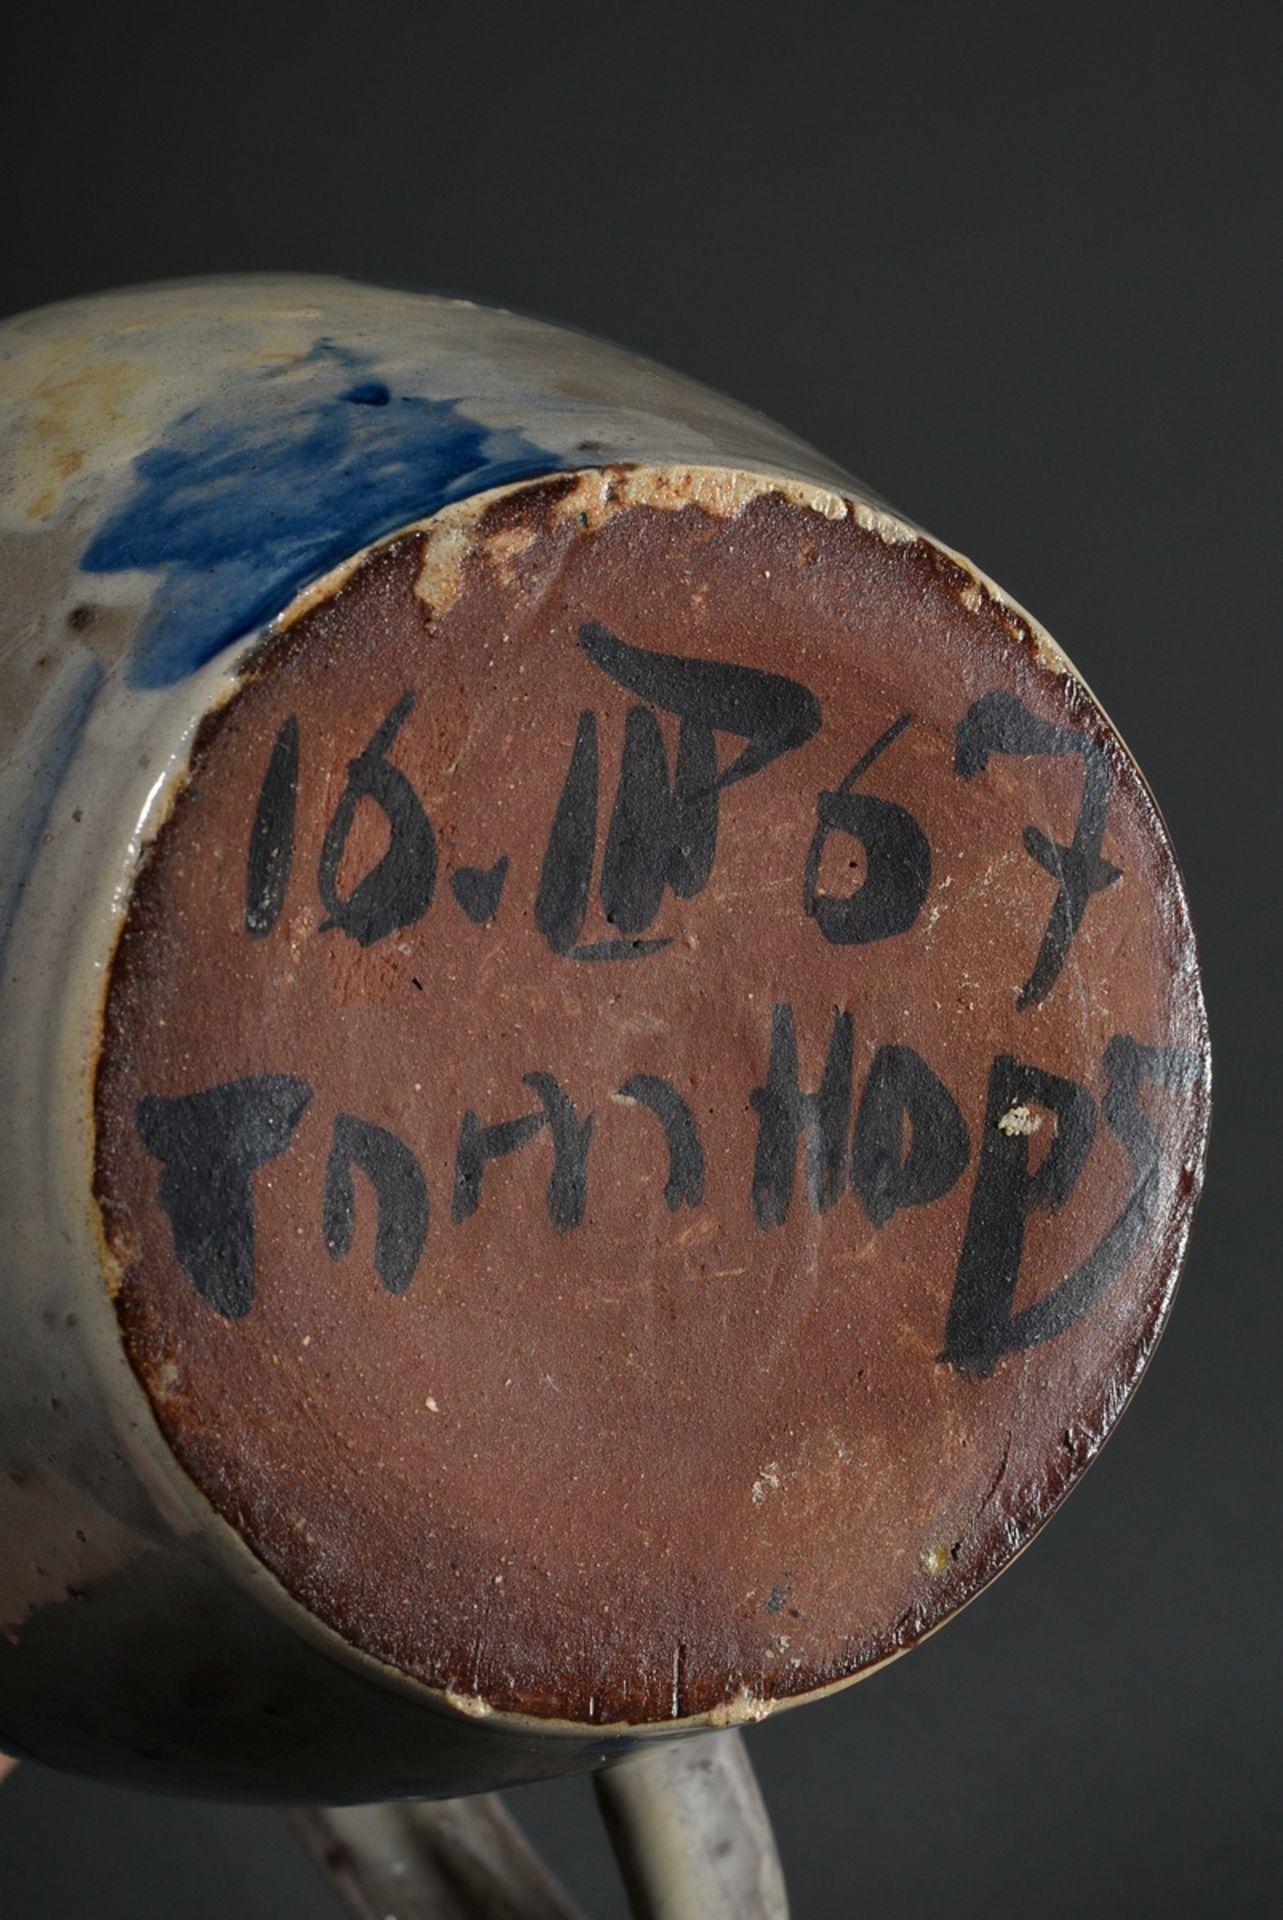 Hops, Tom (1906-1976) Jug "Fishes" 16.3.67, ceramic, colour glazed, bottom signed/dated, h. 18,8cm - Image 6 of 6